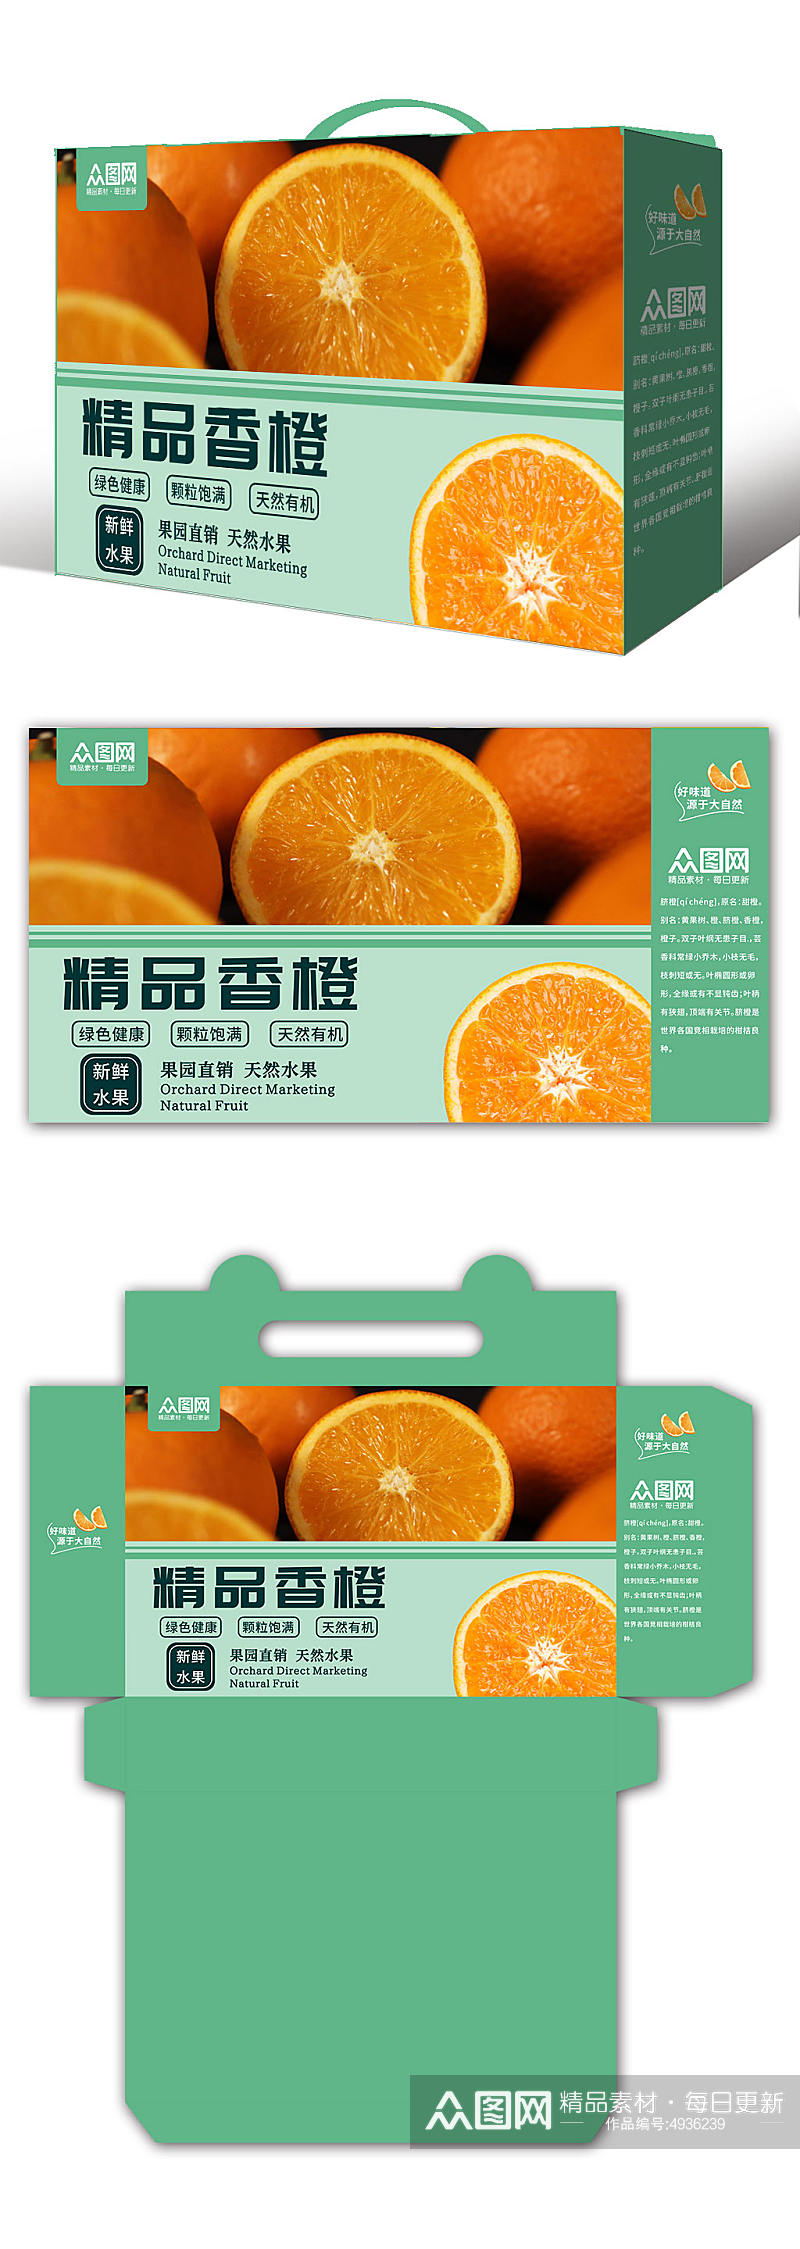 精品香橙鲜橙橙子礼盒包装设计素材